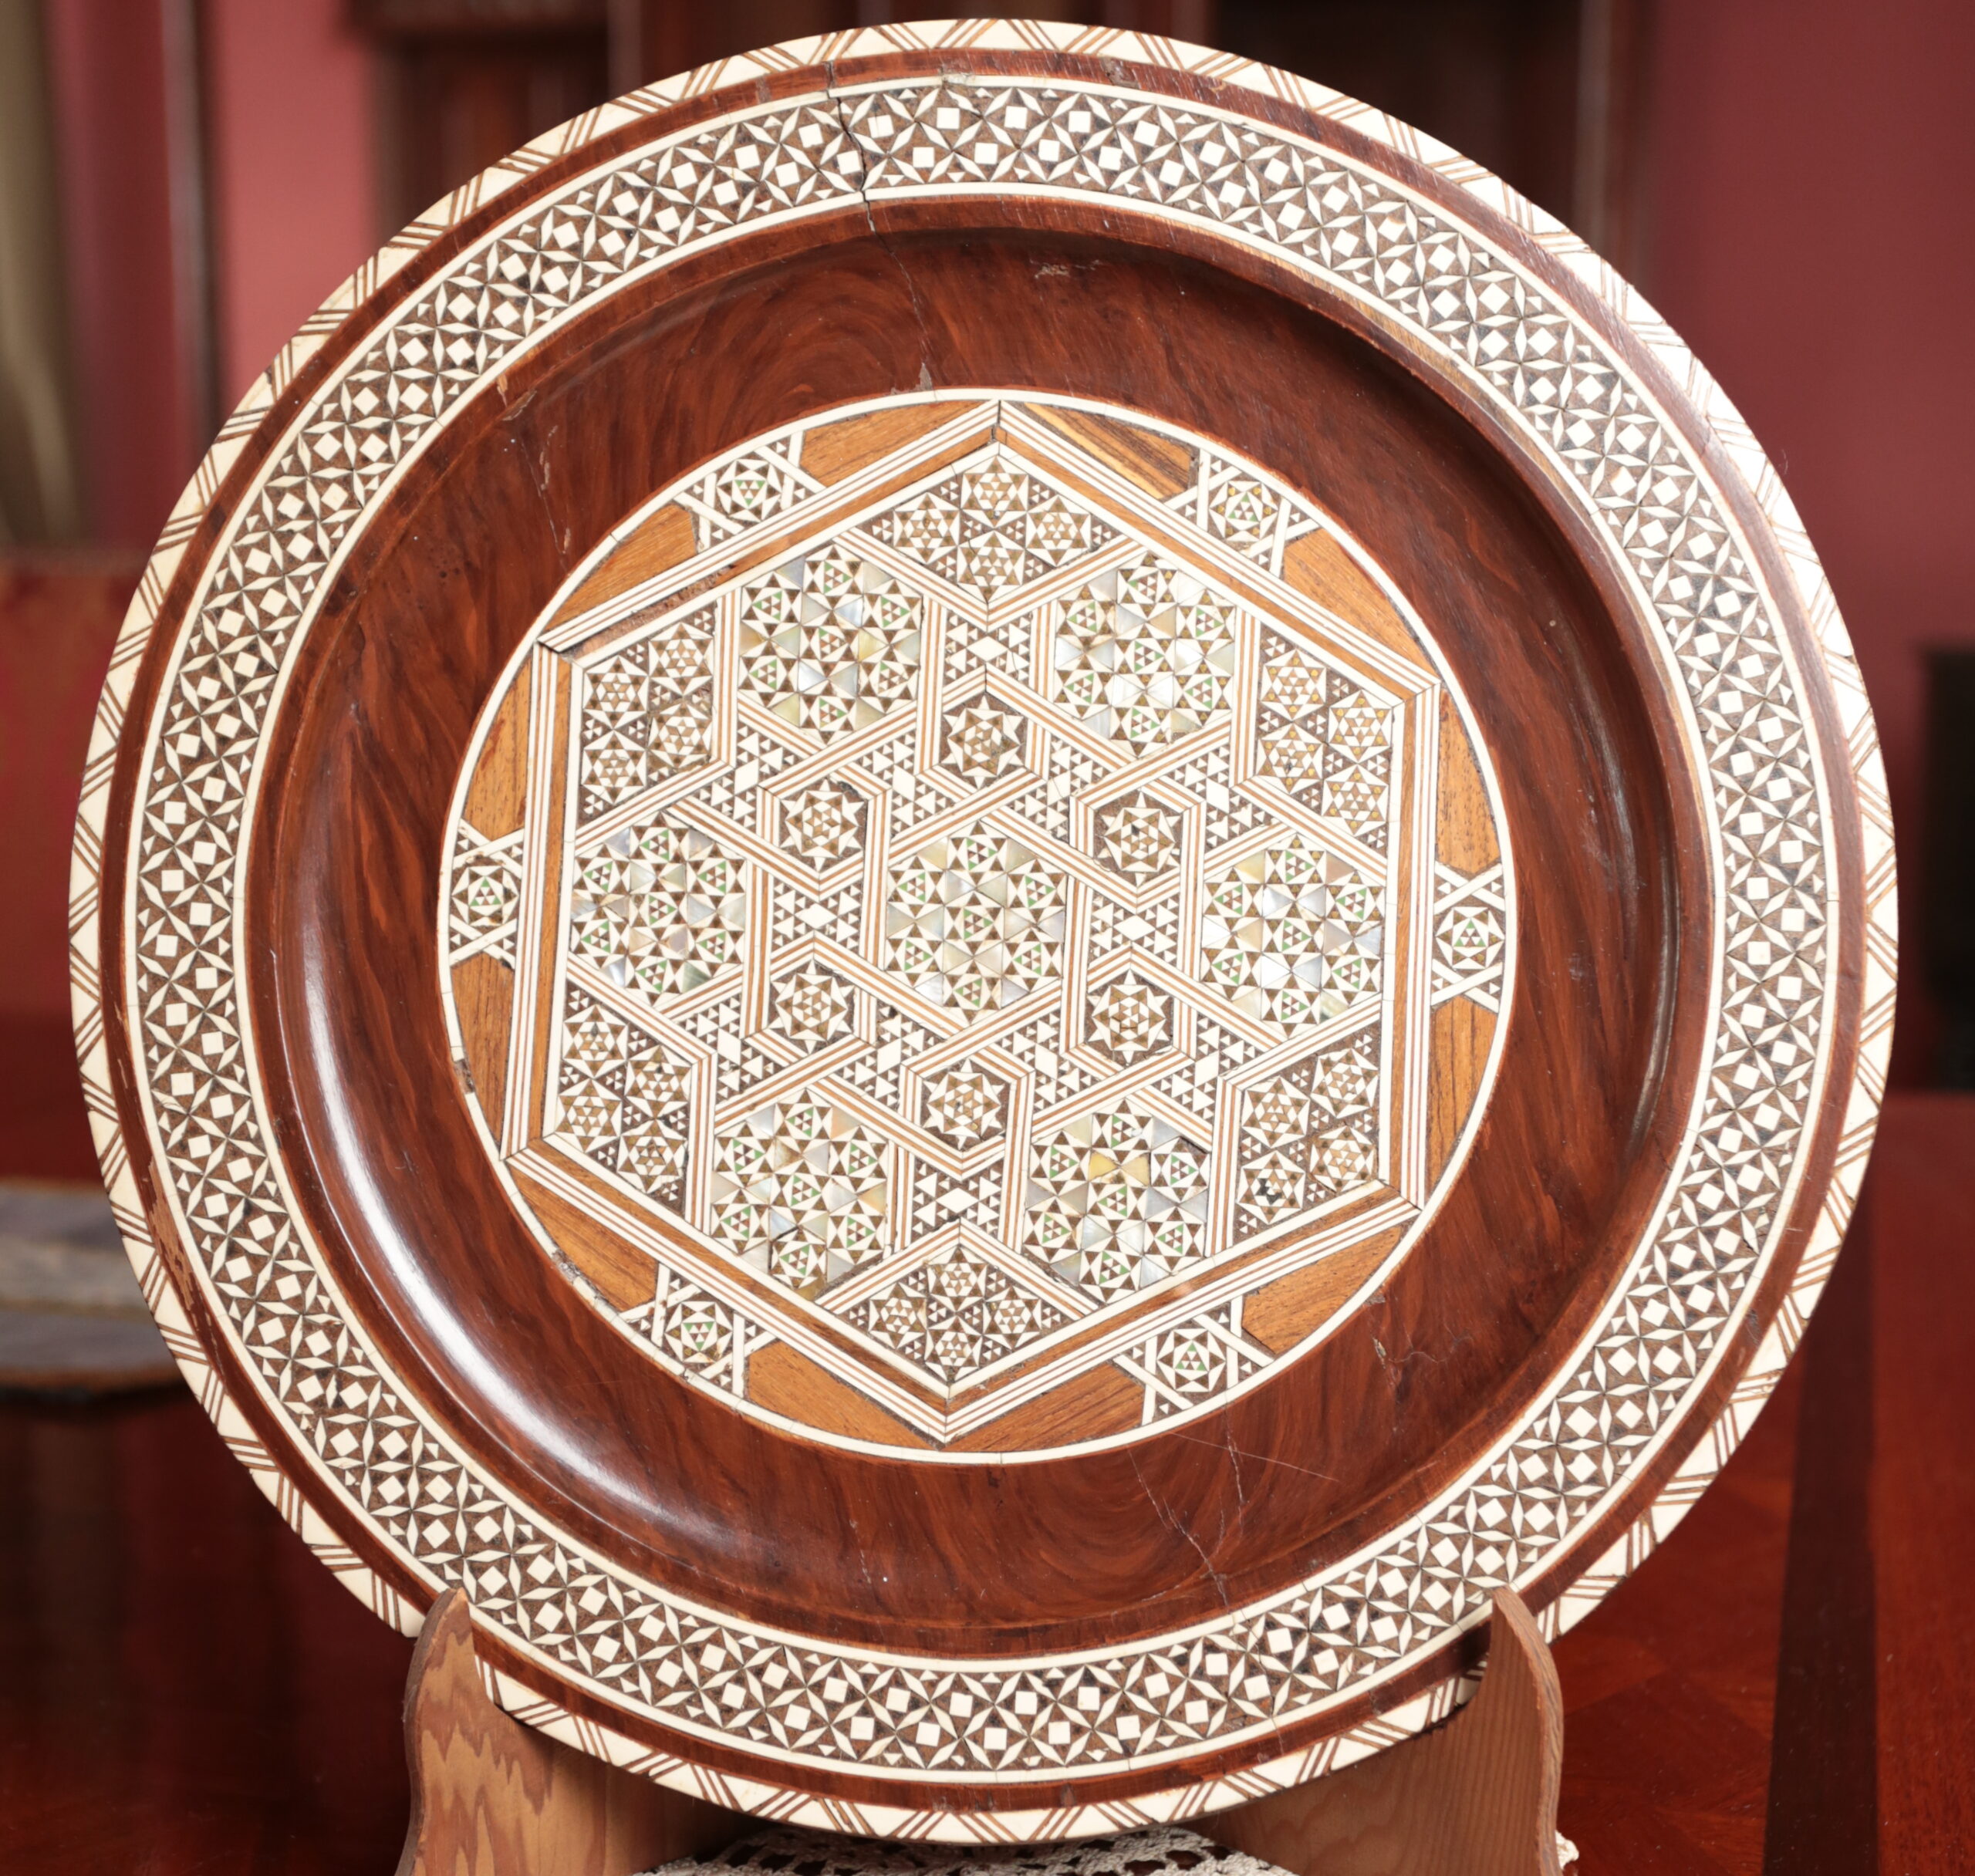 Ozdobný arabský talíř vykládaný průměr 35 cm - 3